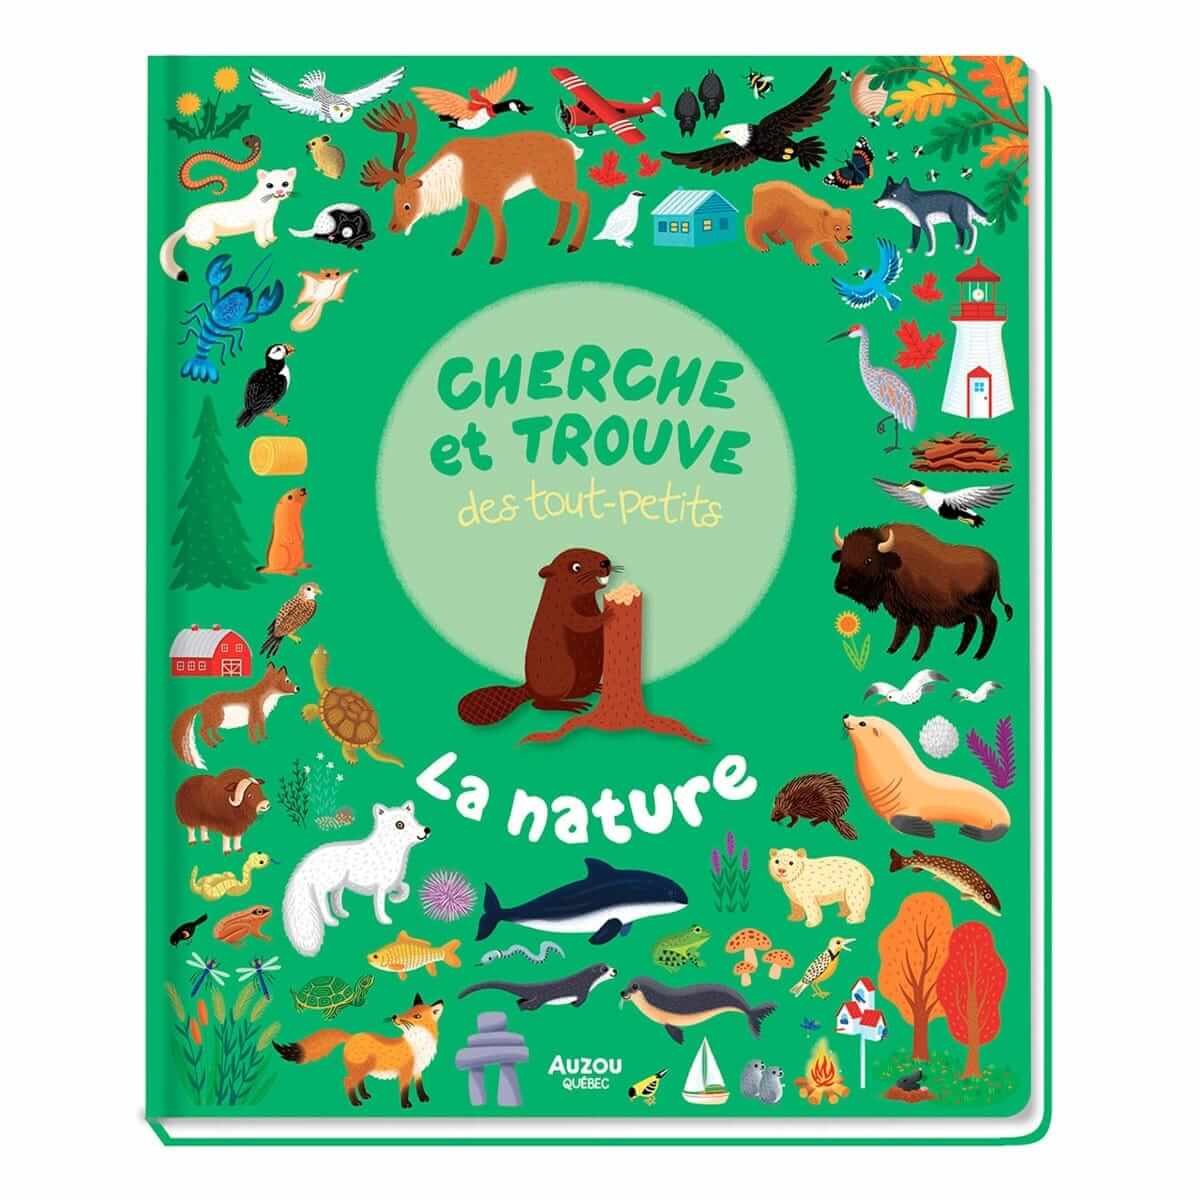 Cherche et trouve des tout-petits: Jeux éducatif pour apprendre les animaux  et leurs noms, Livre enfants 2-5 ans . (French Edition)